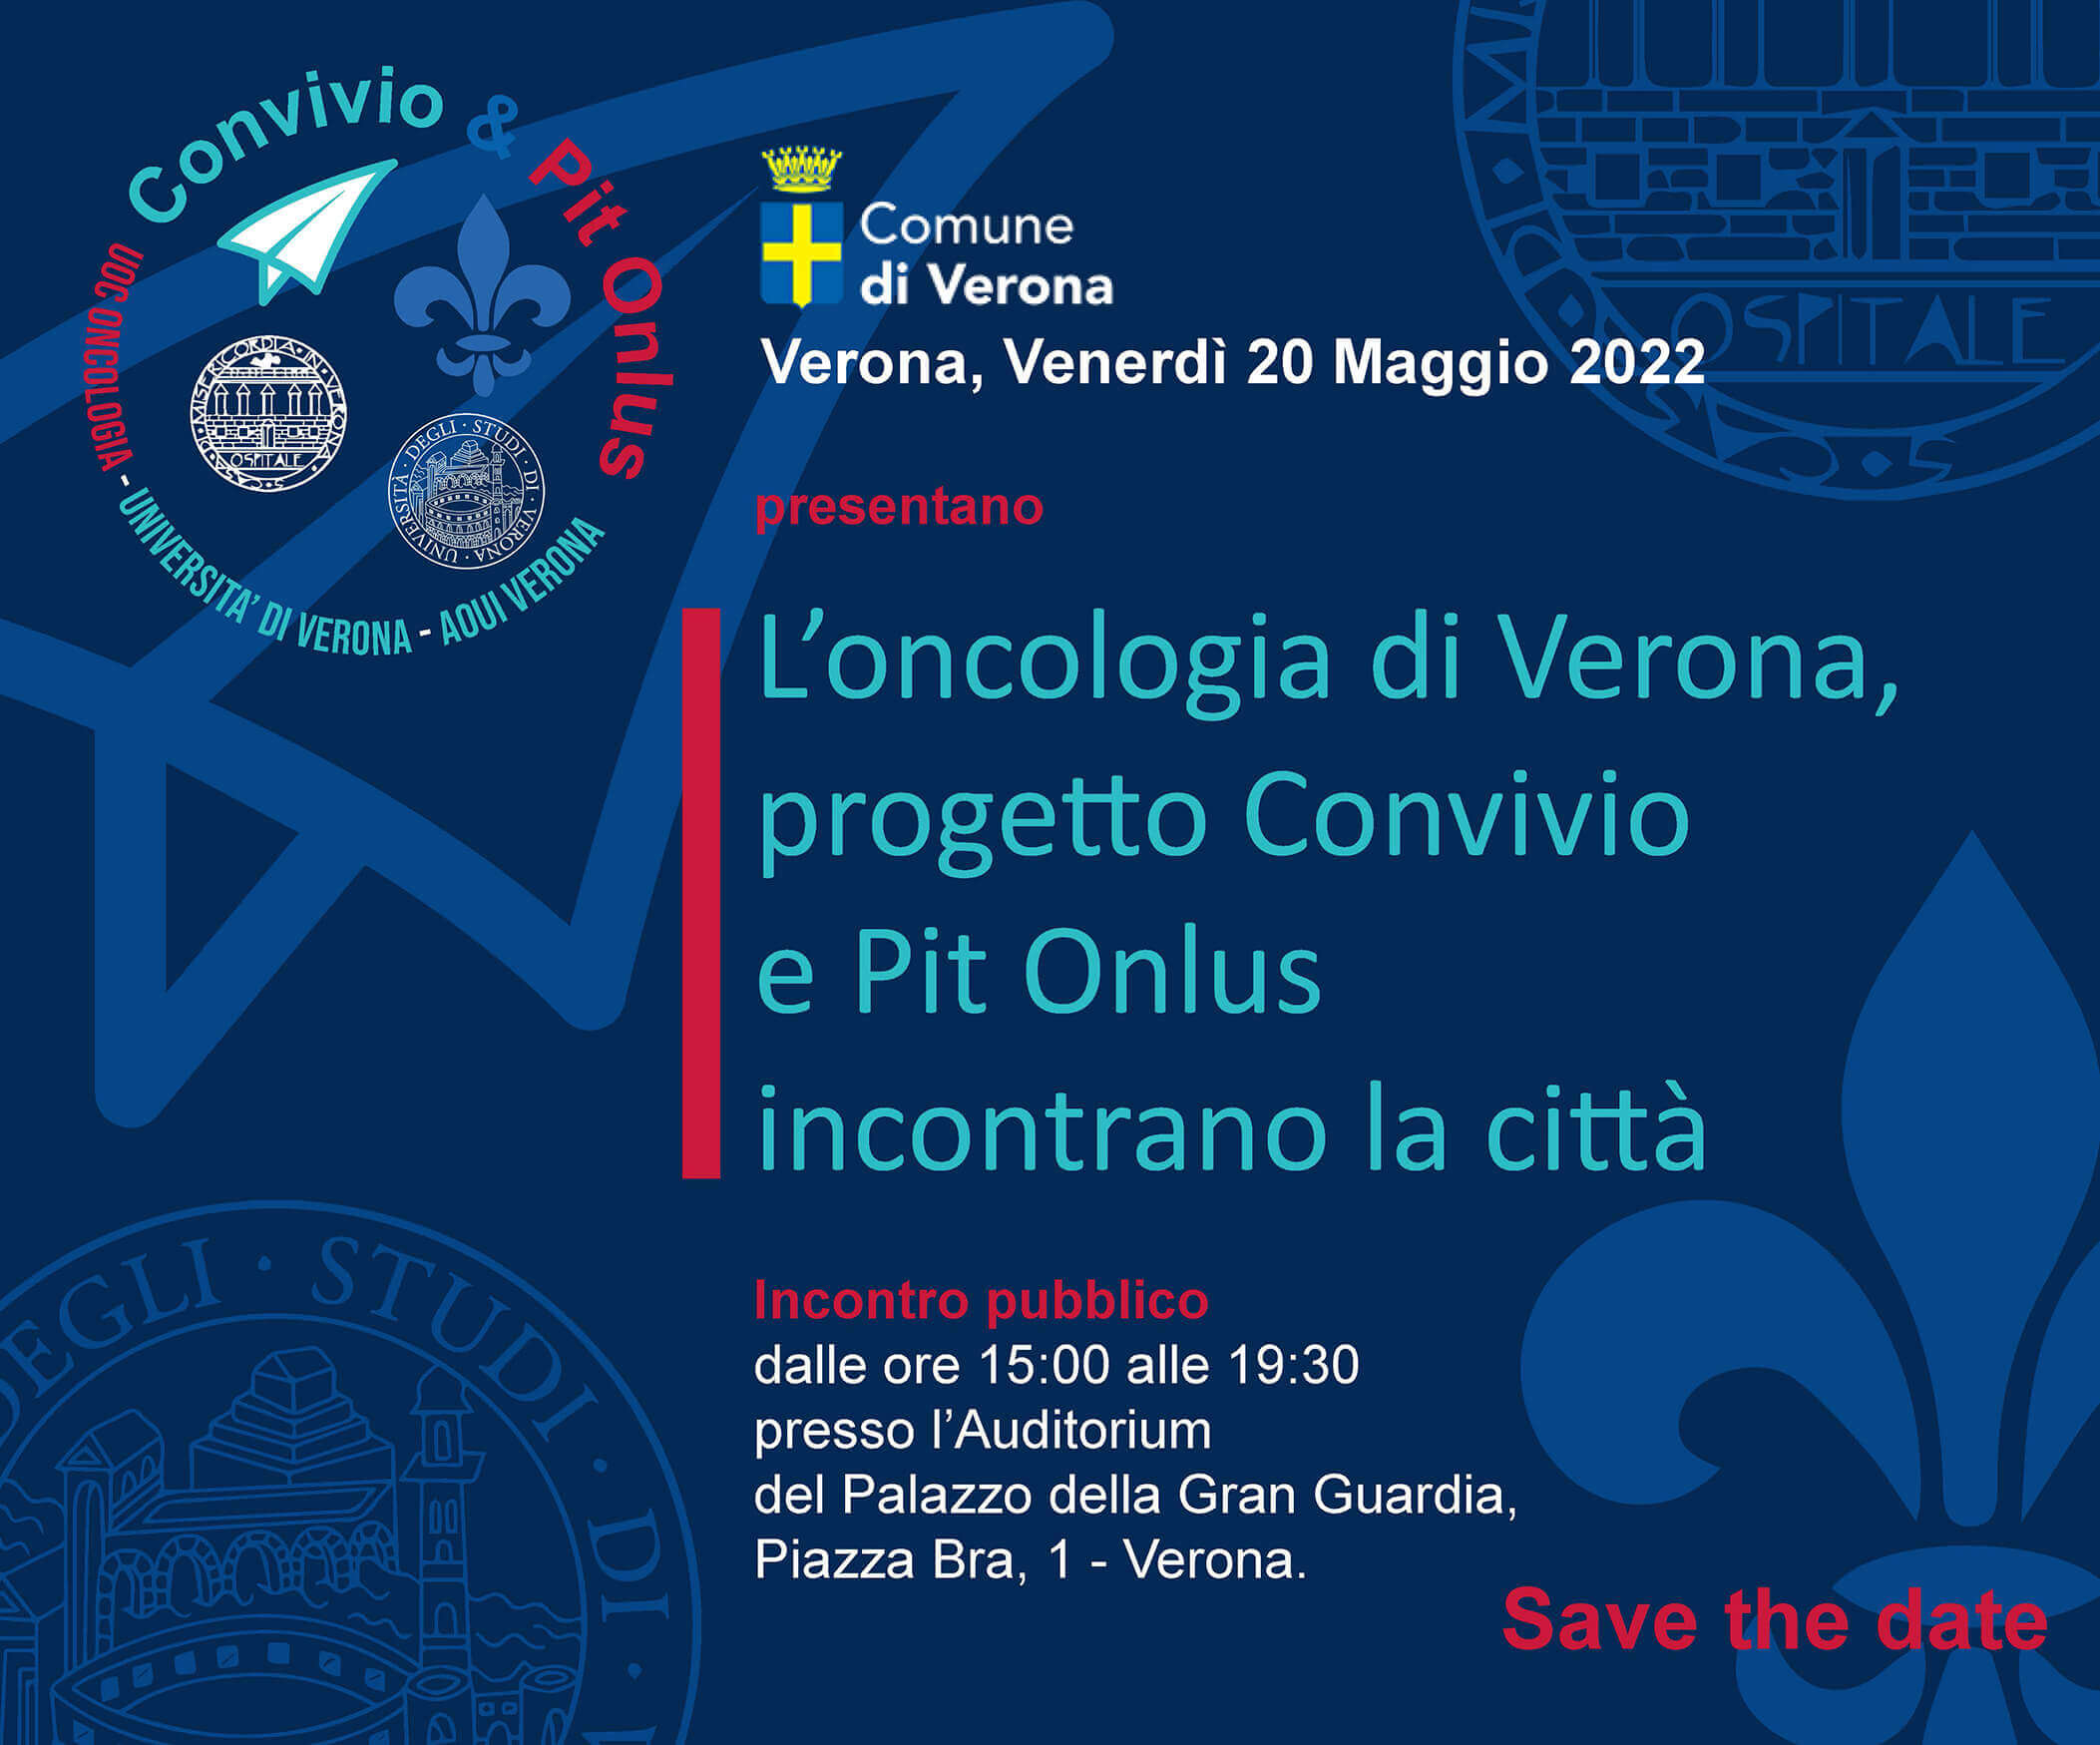 Evento L’oncologia di Verona, progetto Convivio e Pit Onlus incontrano la città.